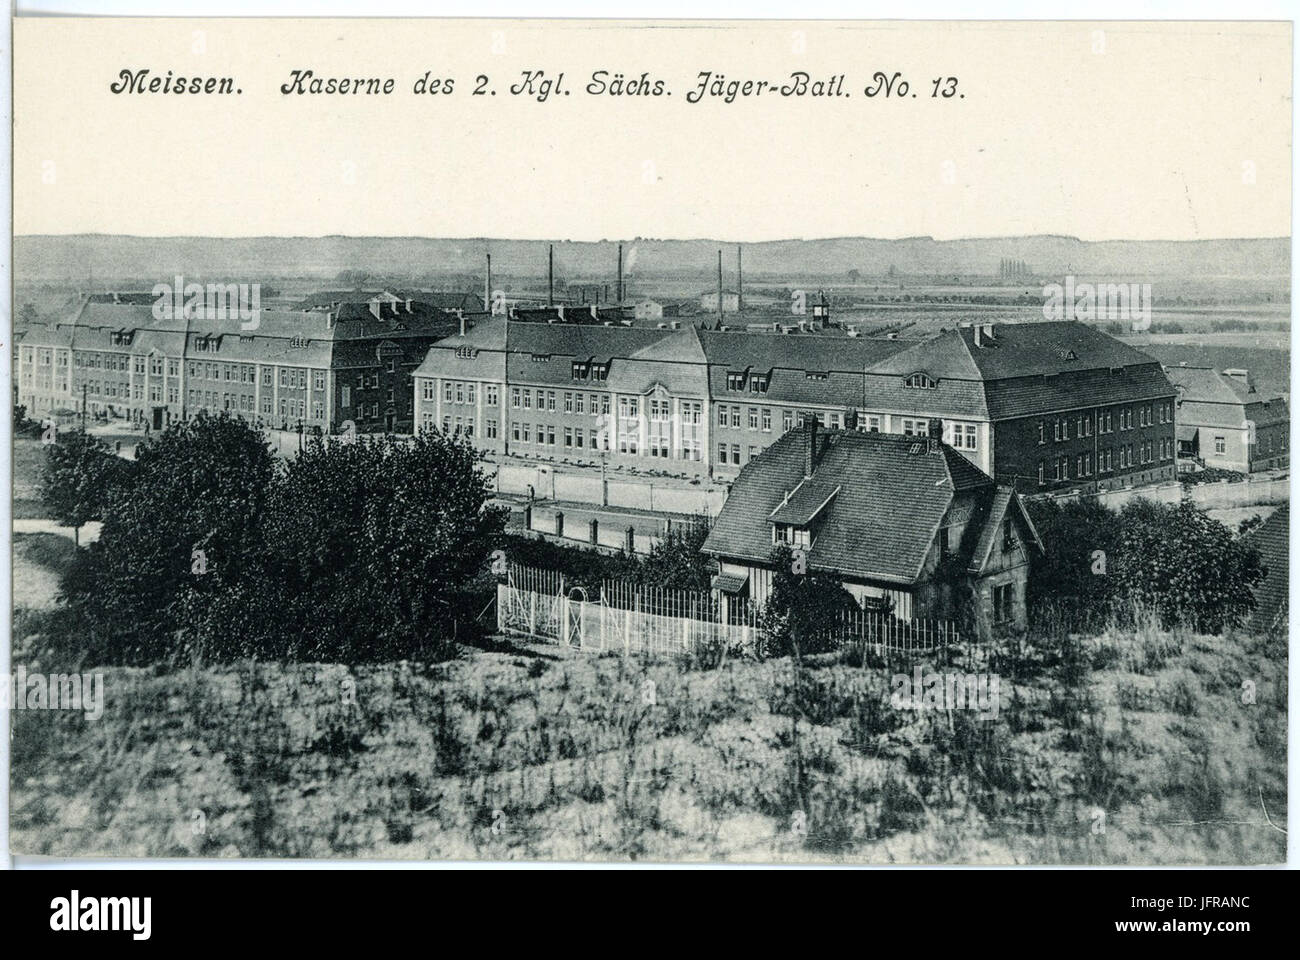 18174-Meißen-1914-Kaserne des 2. Königlich Sächsischen Jäger-Bataillon Nr. 13-Brück & Sohn Kunstverlag Stock Photo